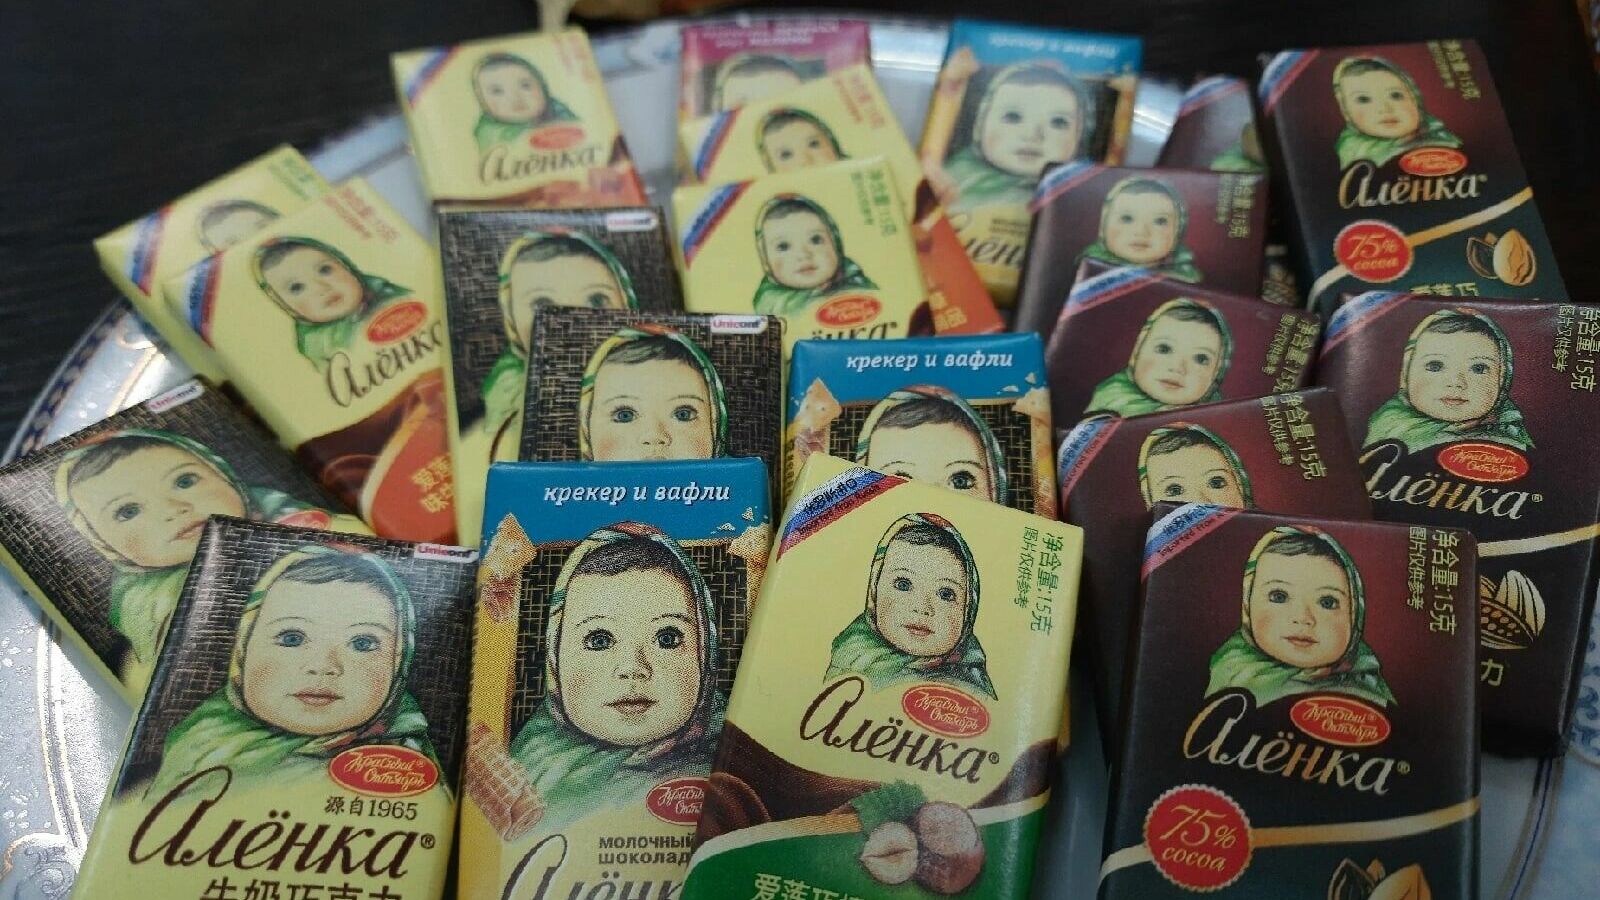 Нижегородские конфеты поставляют в Европу, Америку и Китай